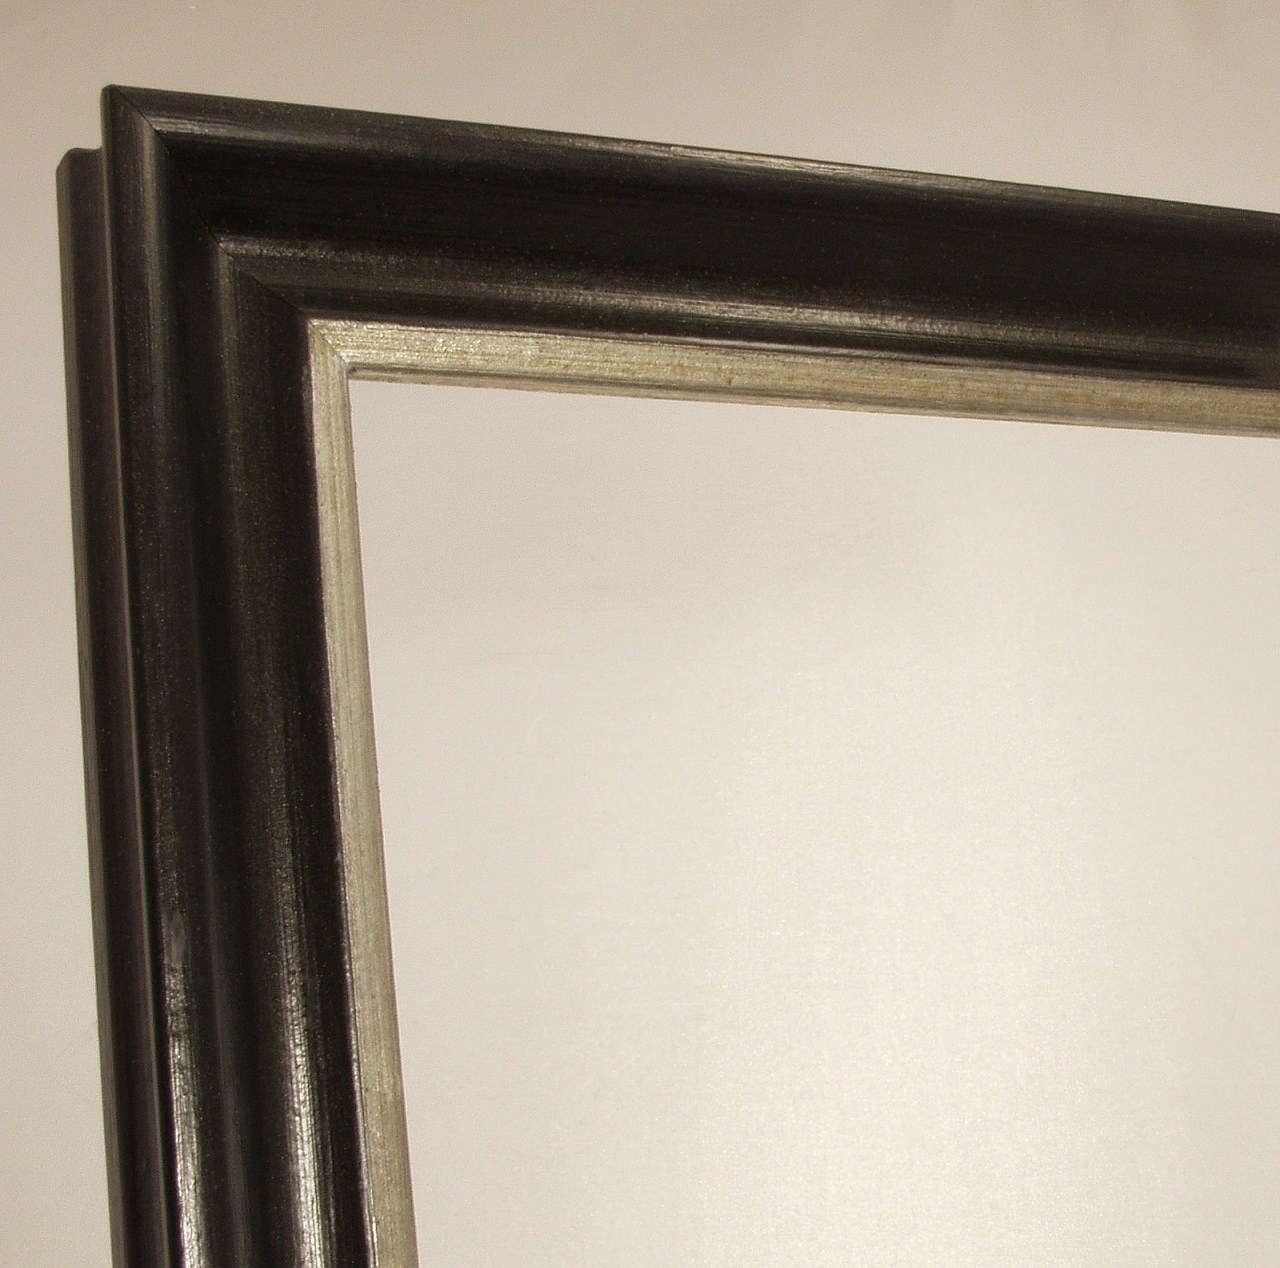 Bilderrahmen klassisch Holzrahmen veredelt schwarz-silber Breite 35 mm